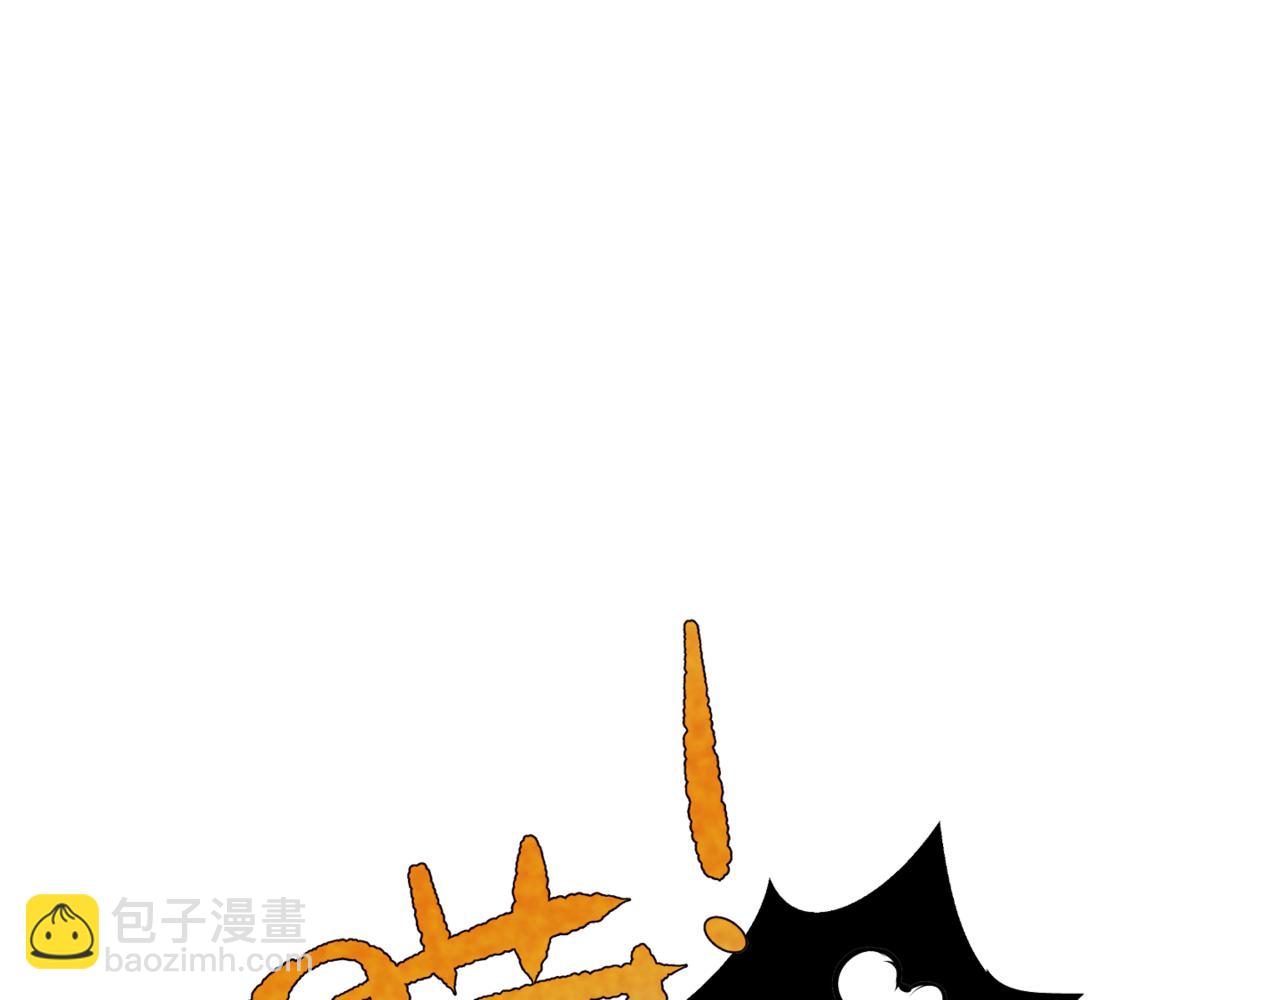 韓小草的漫畫日常 - 神仙 - 4